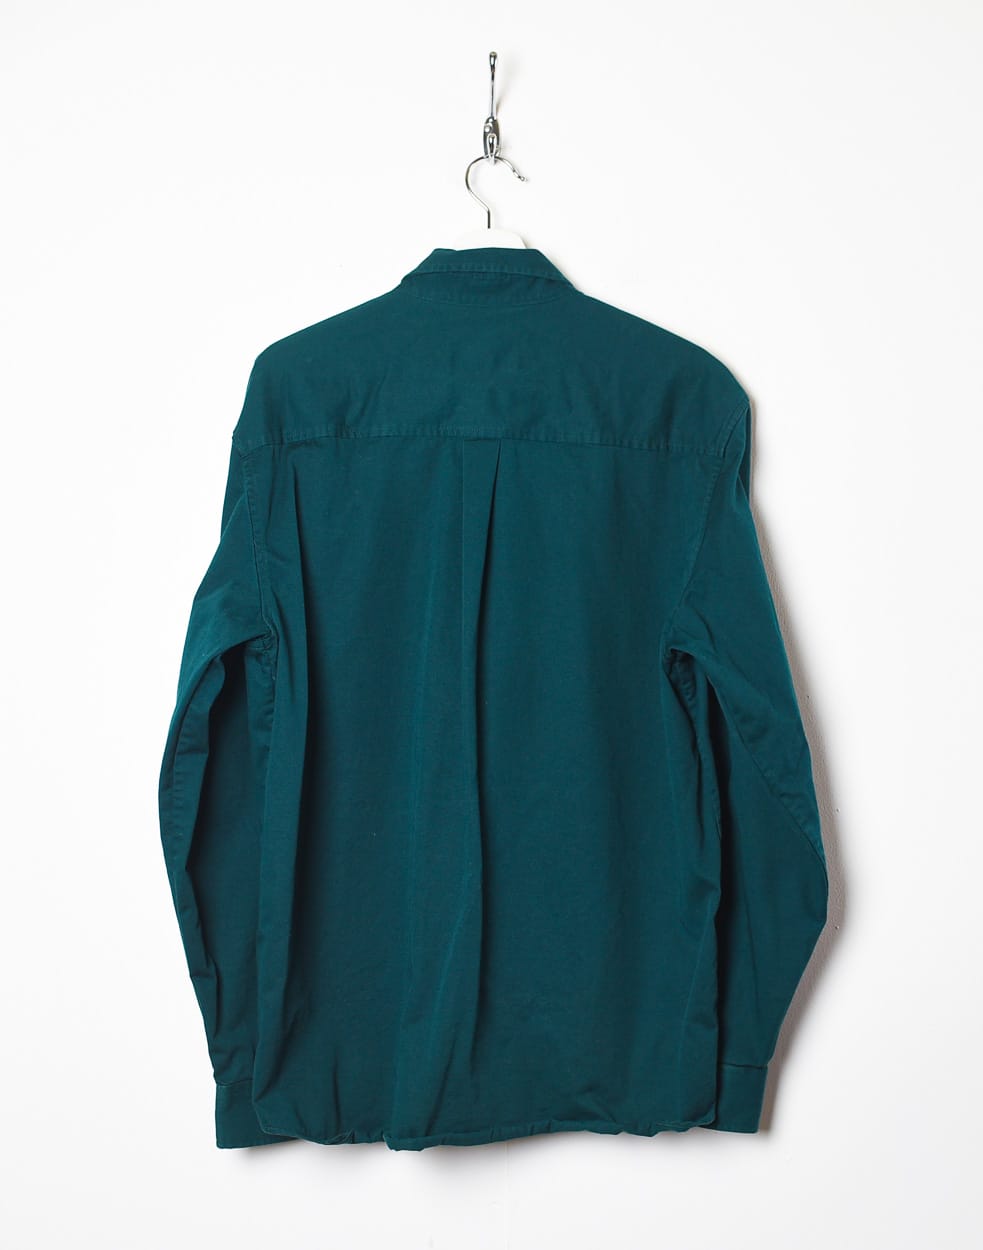 Green Carhartt Shirt - X-Large